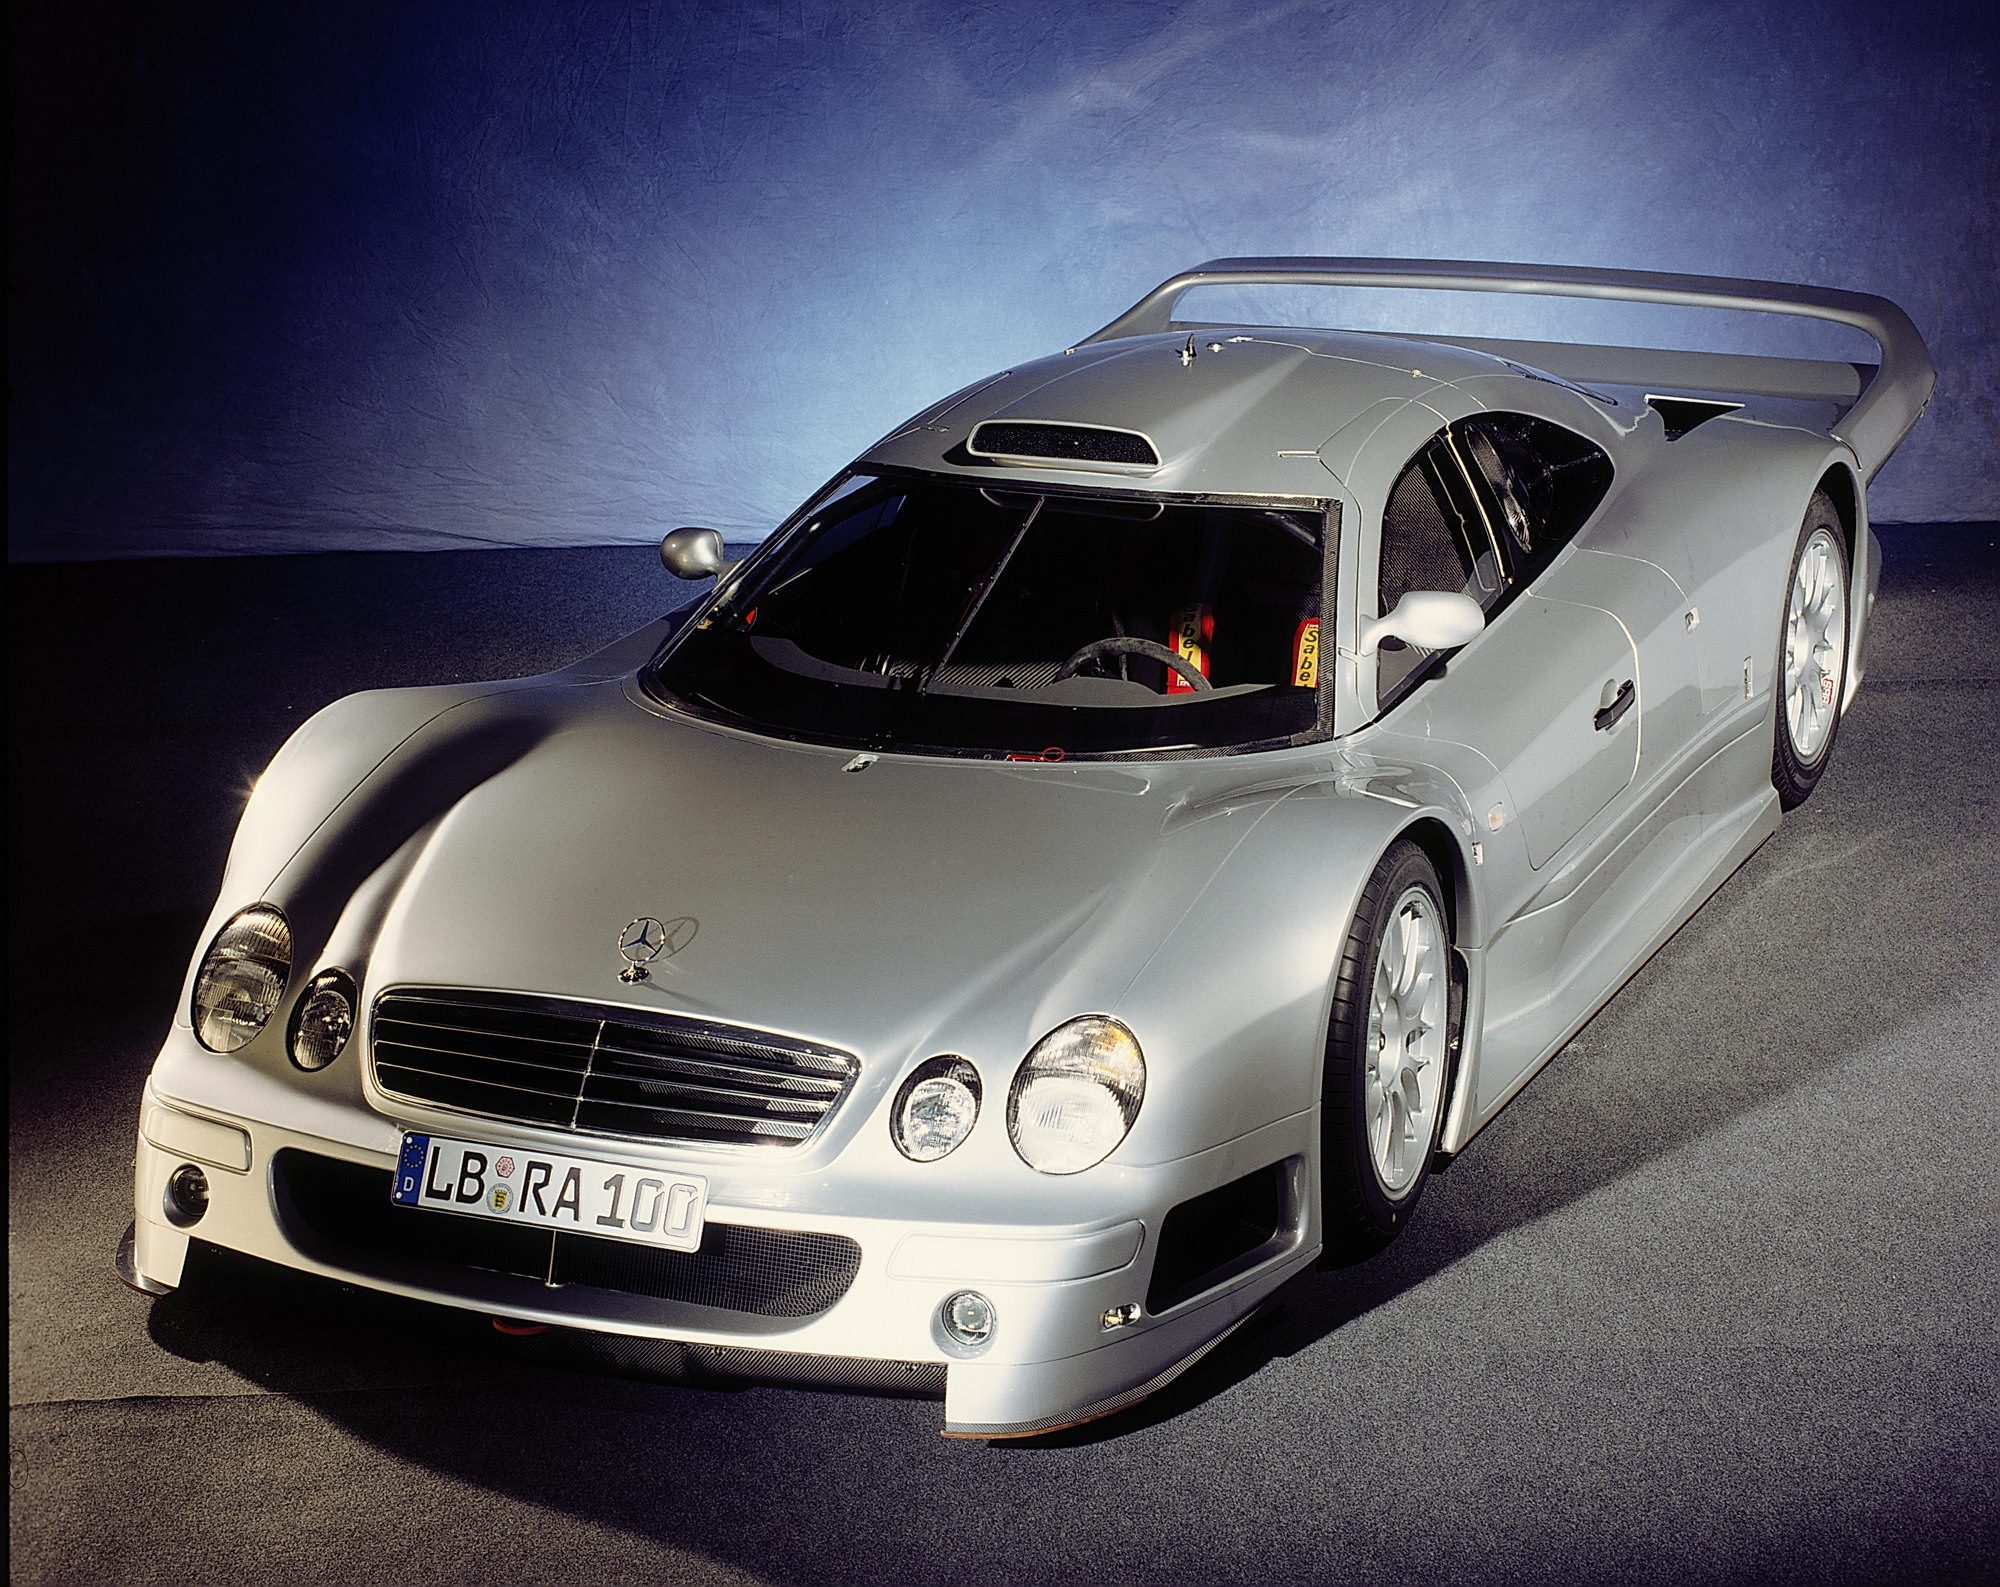 Название дорогой машины. Mercedes-Benz CLK-GTR 1997. Mercedes-Benz CLK GTR AMG 1997. Mercedes Benz CLK GTR AMG. Mercedes CLK GTR 1997.